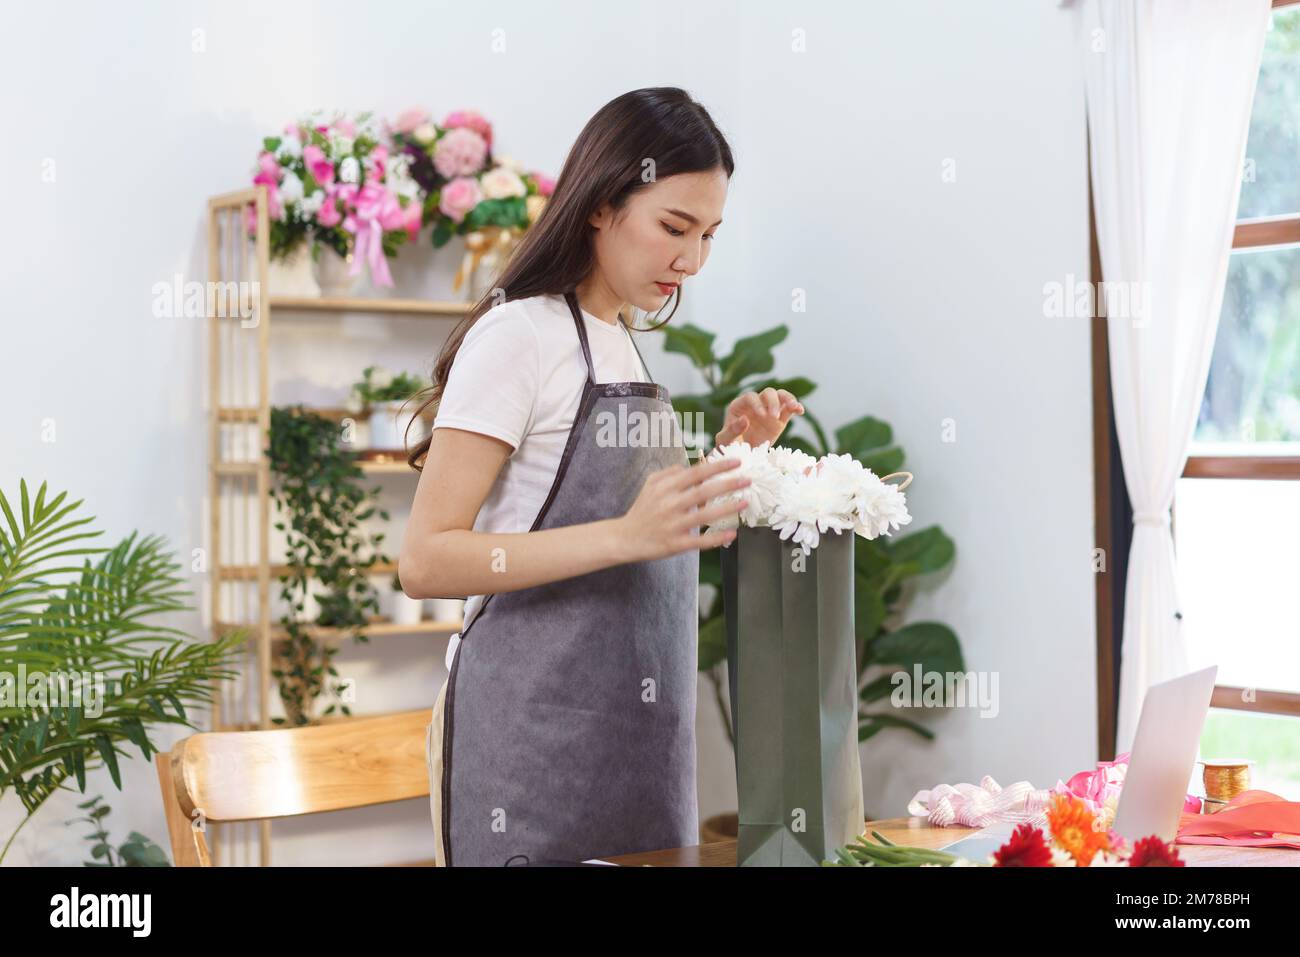 Concepto de florista, florista femenino que arregla el ramo de flores de crisantemo en la bolsa de compras en la tienda. Foto de stock